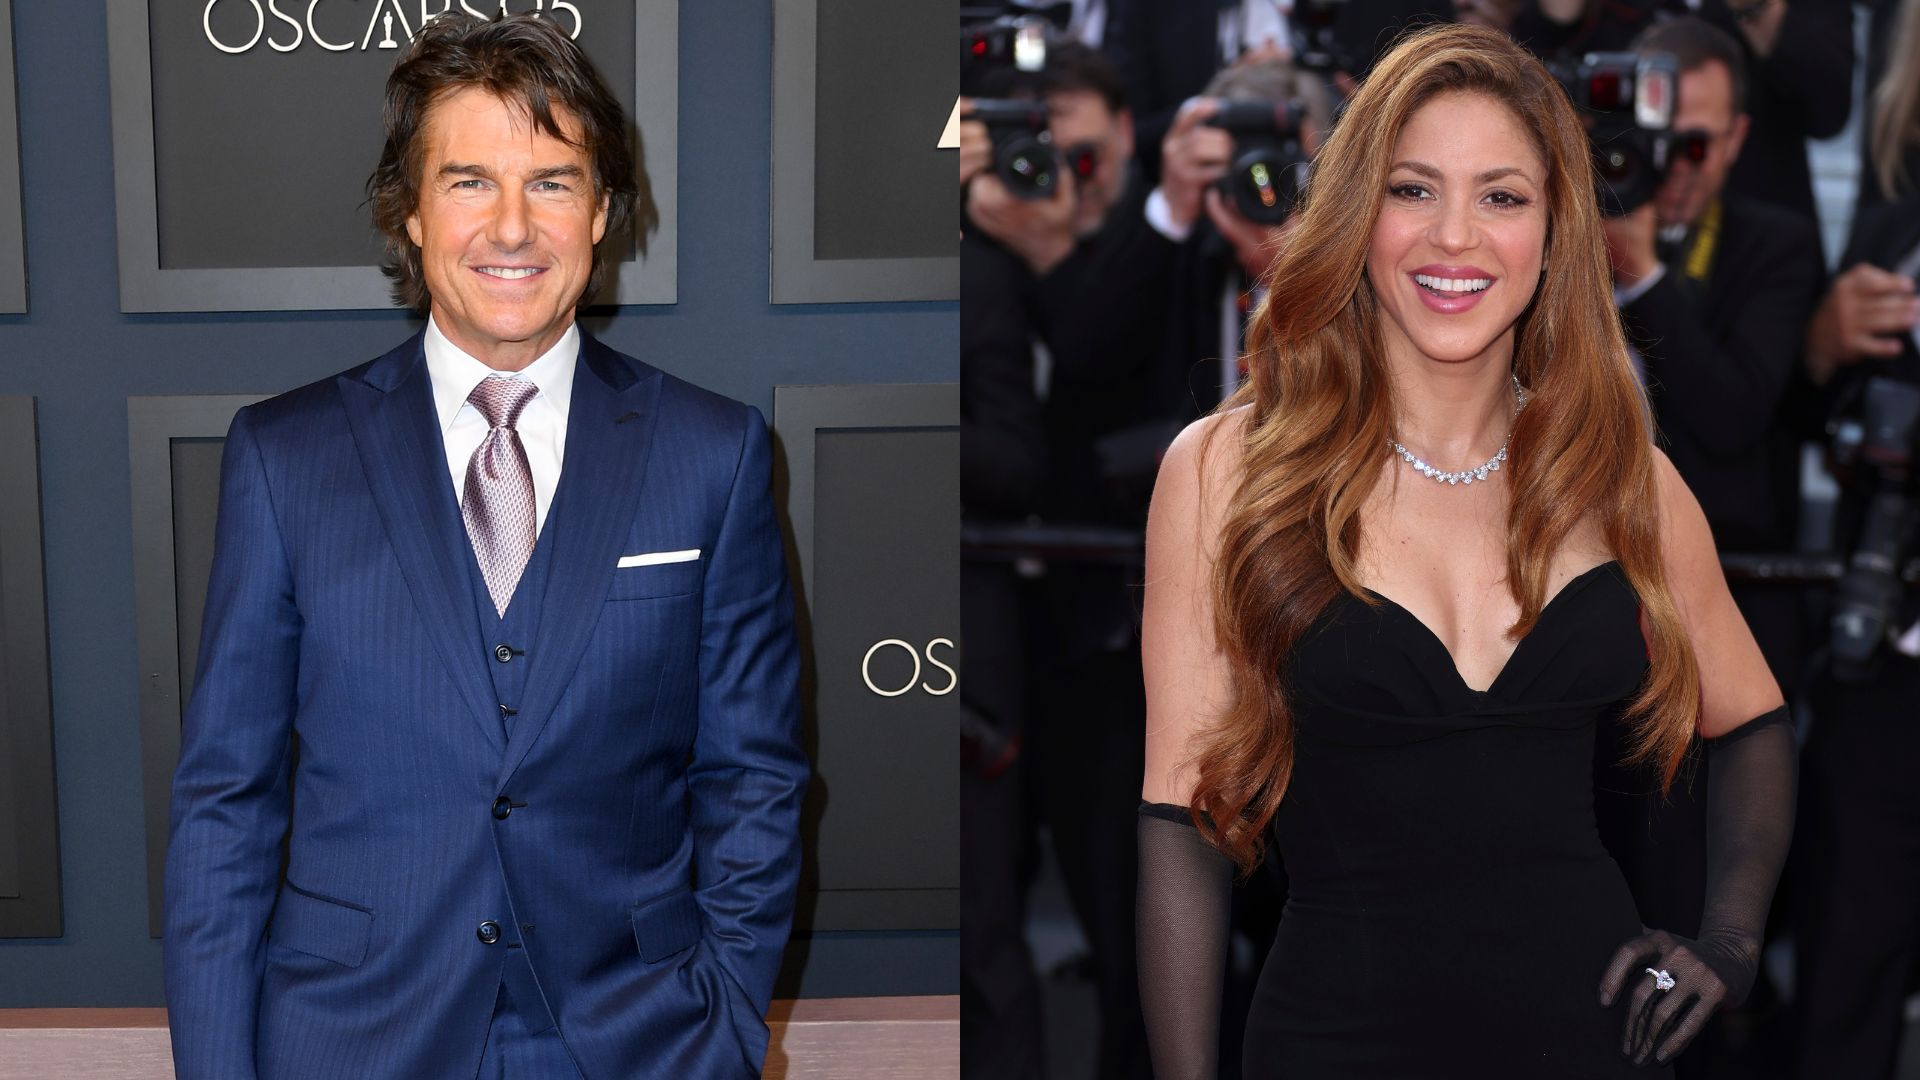 Tom Cruise estaria “extremamente interessado” em conquistar o coração de Shakira, diz site: “Existe química”